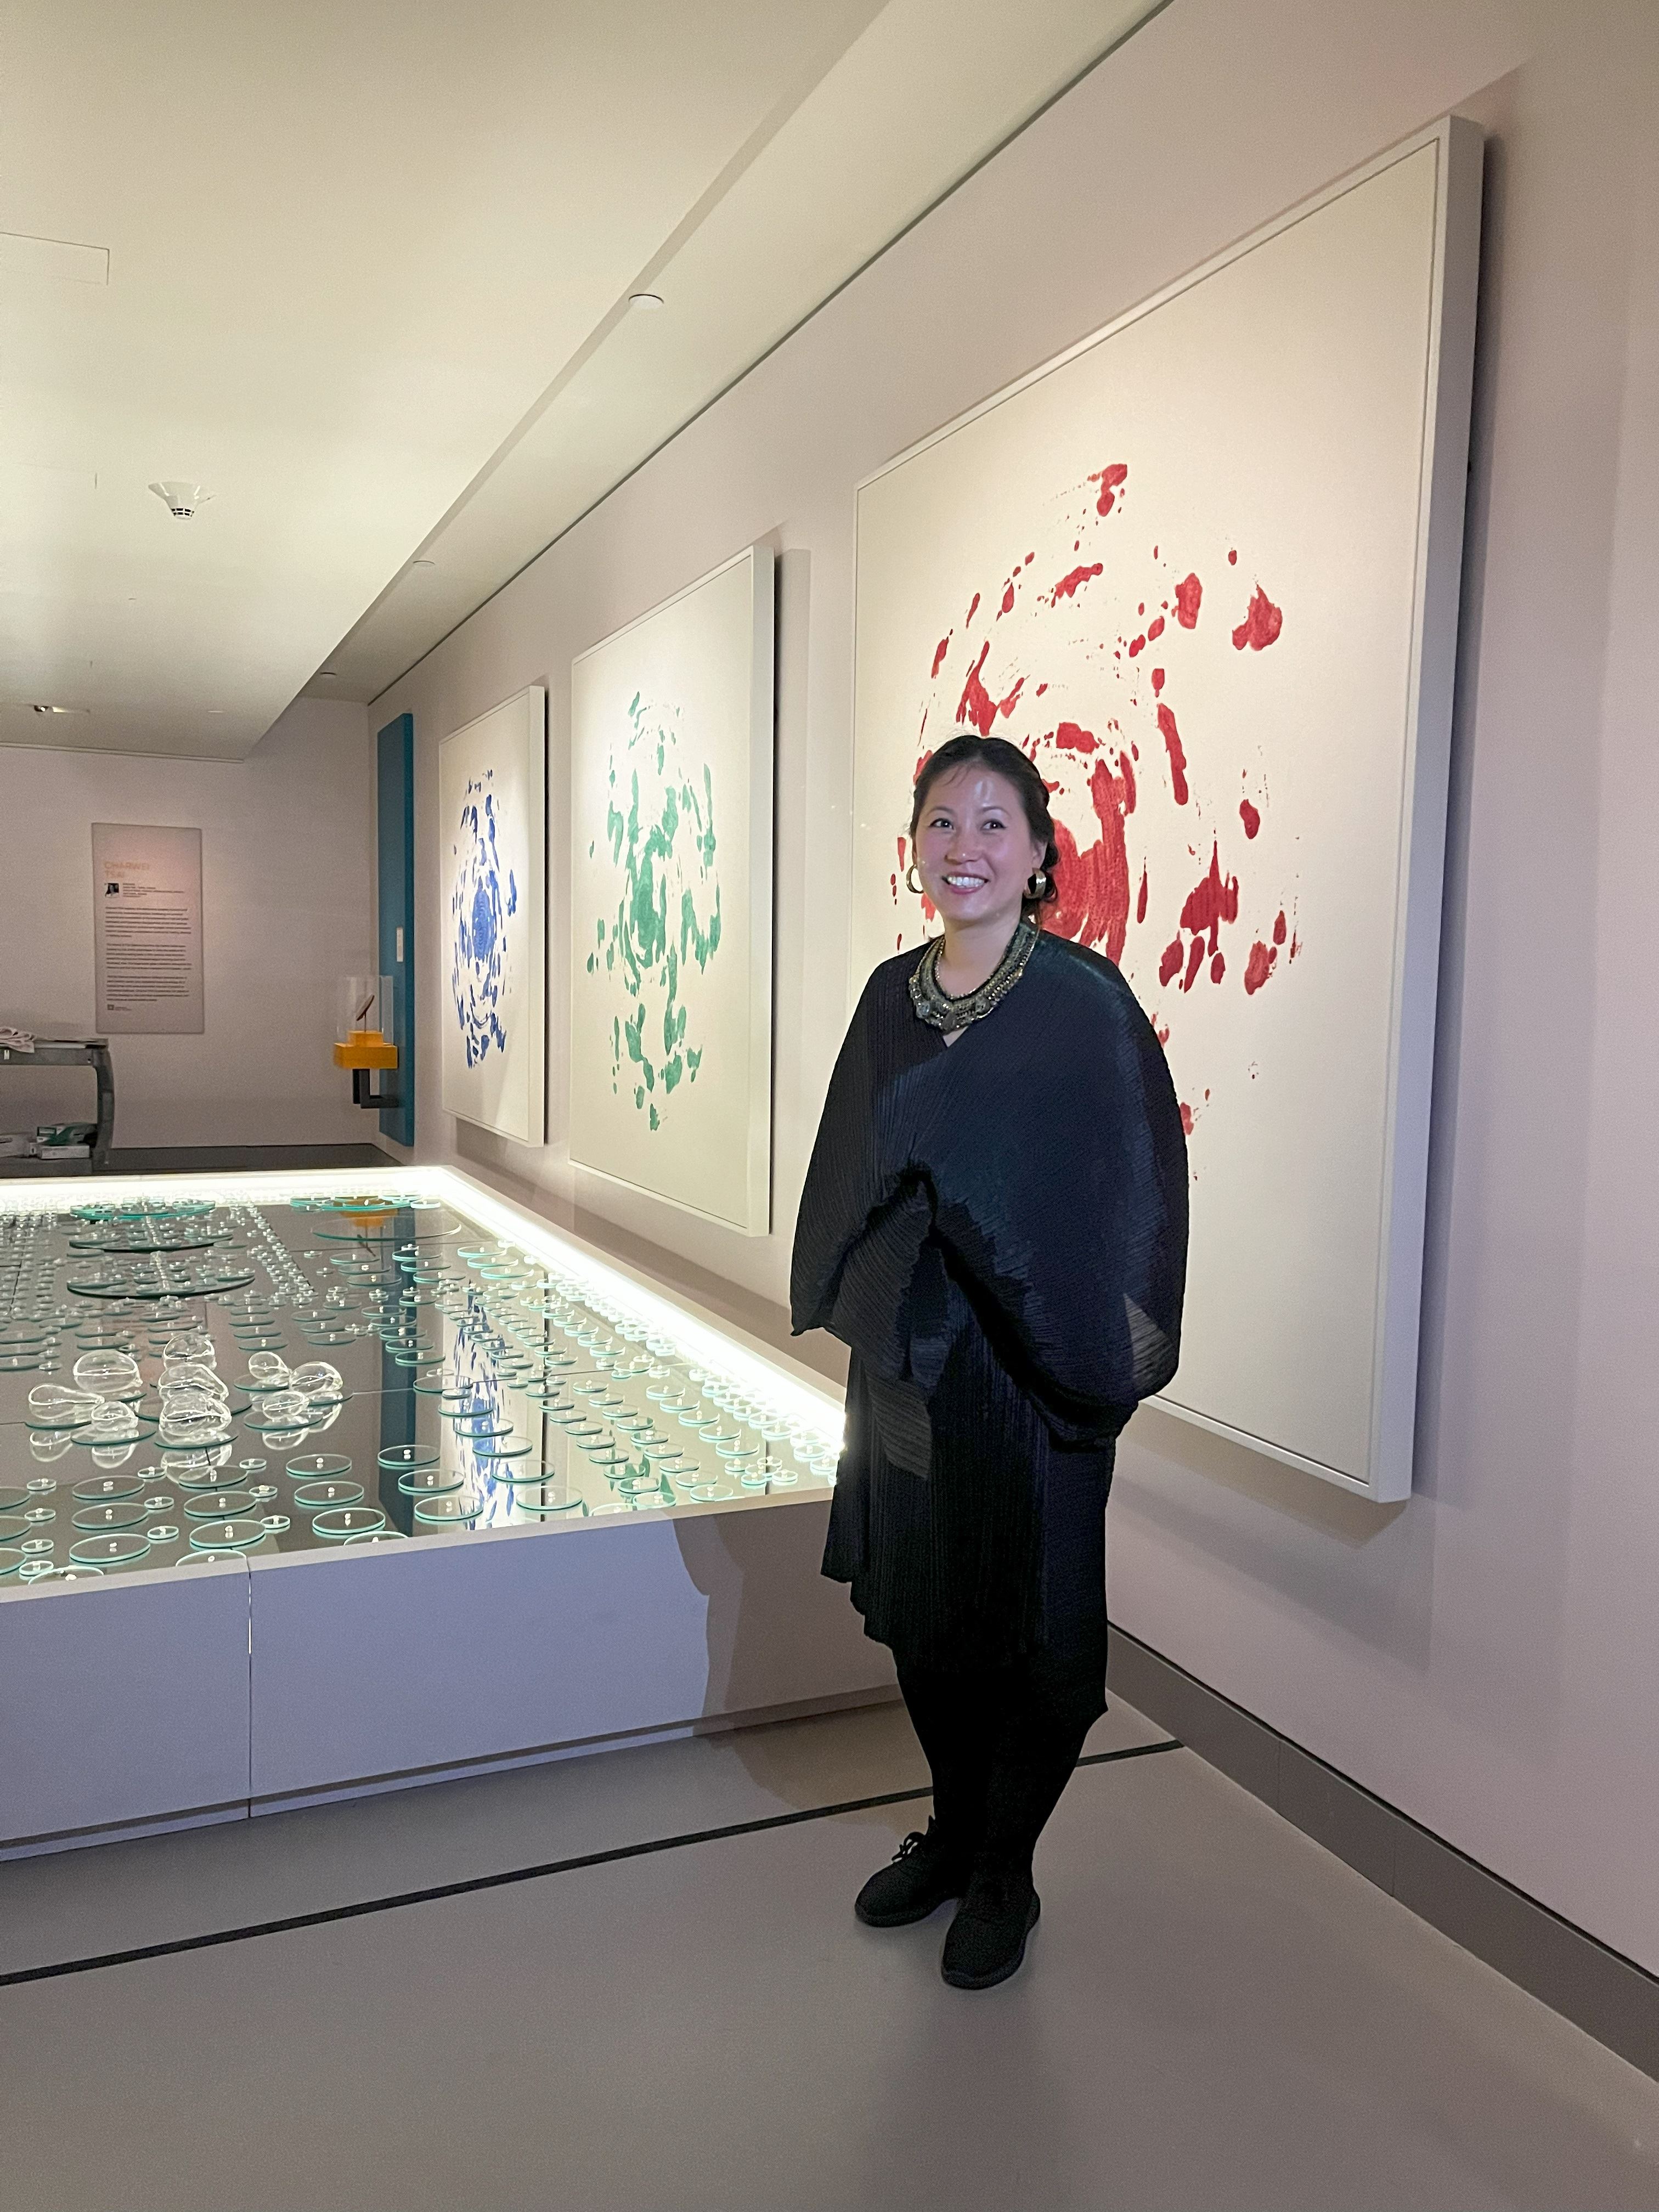 魯賓美術館20週年展盛大開幕  蔡佳葳「兩界」重新想像當代喜瑪拉雅藝術